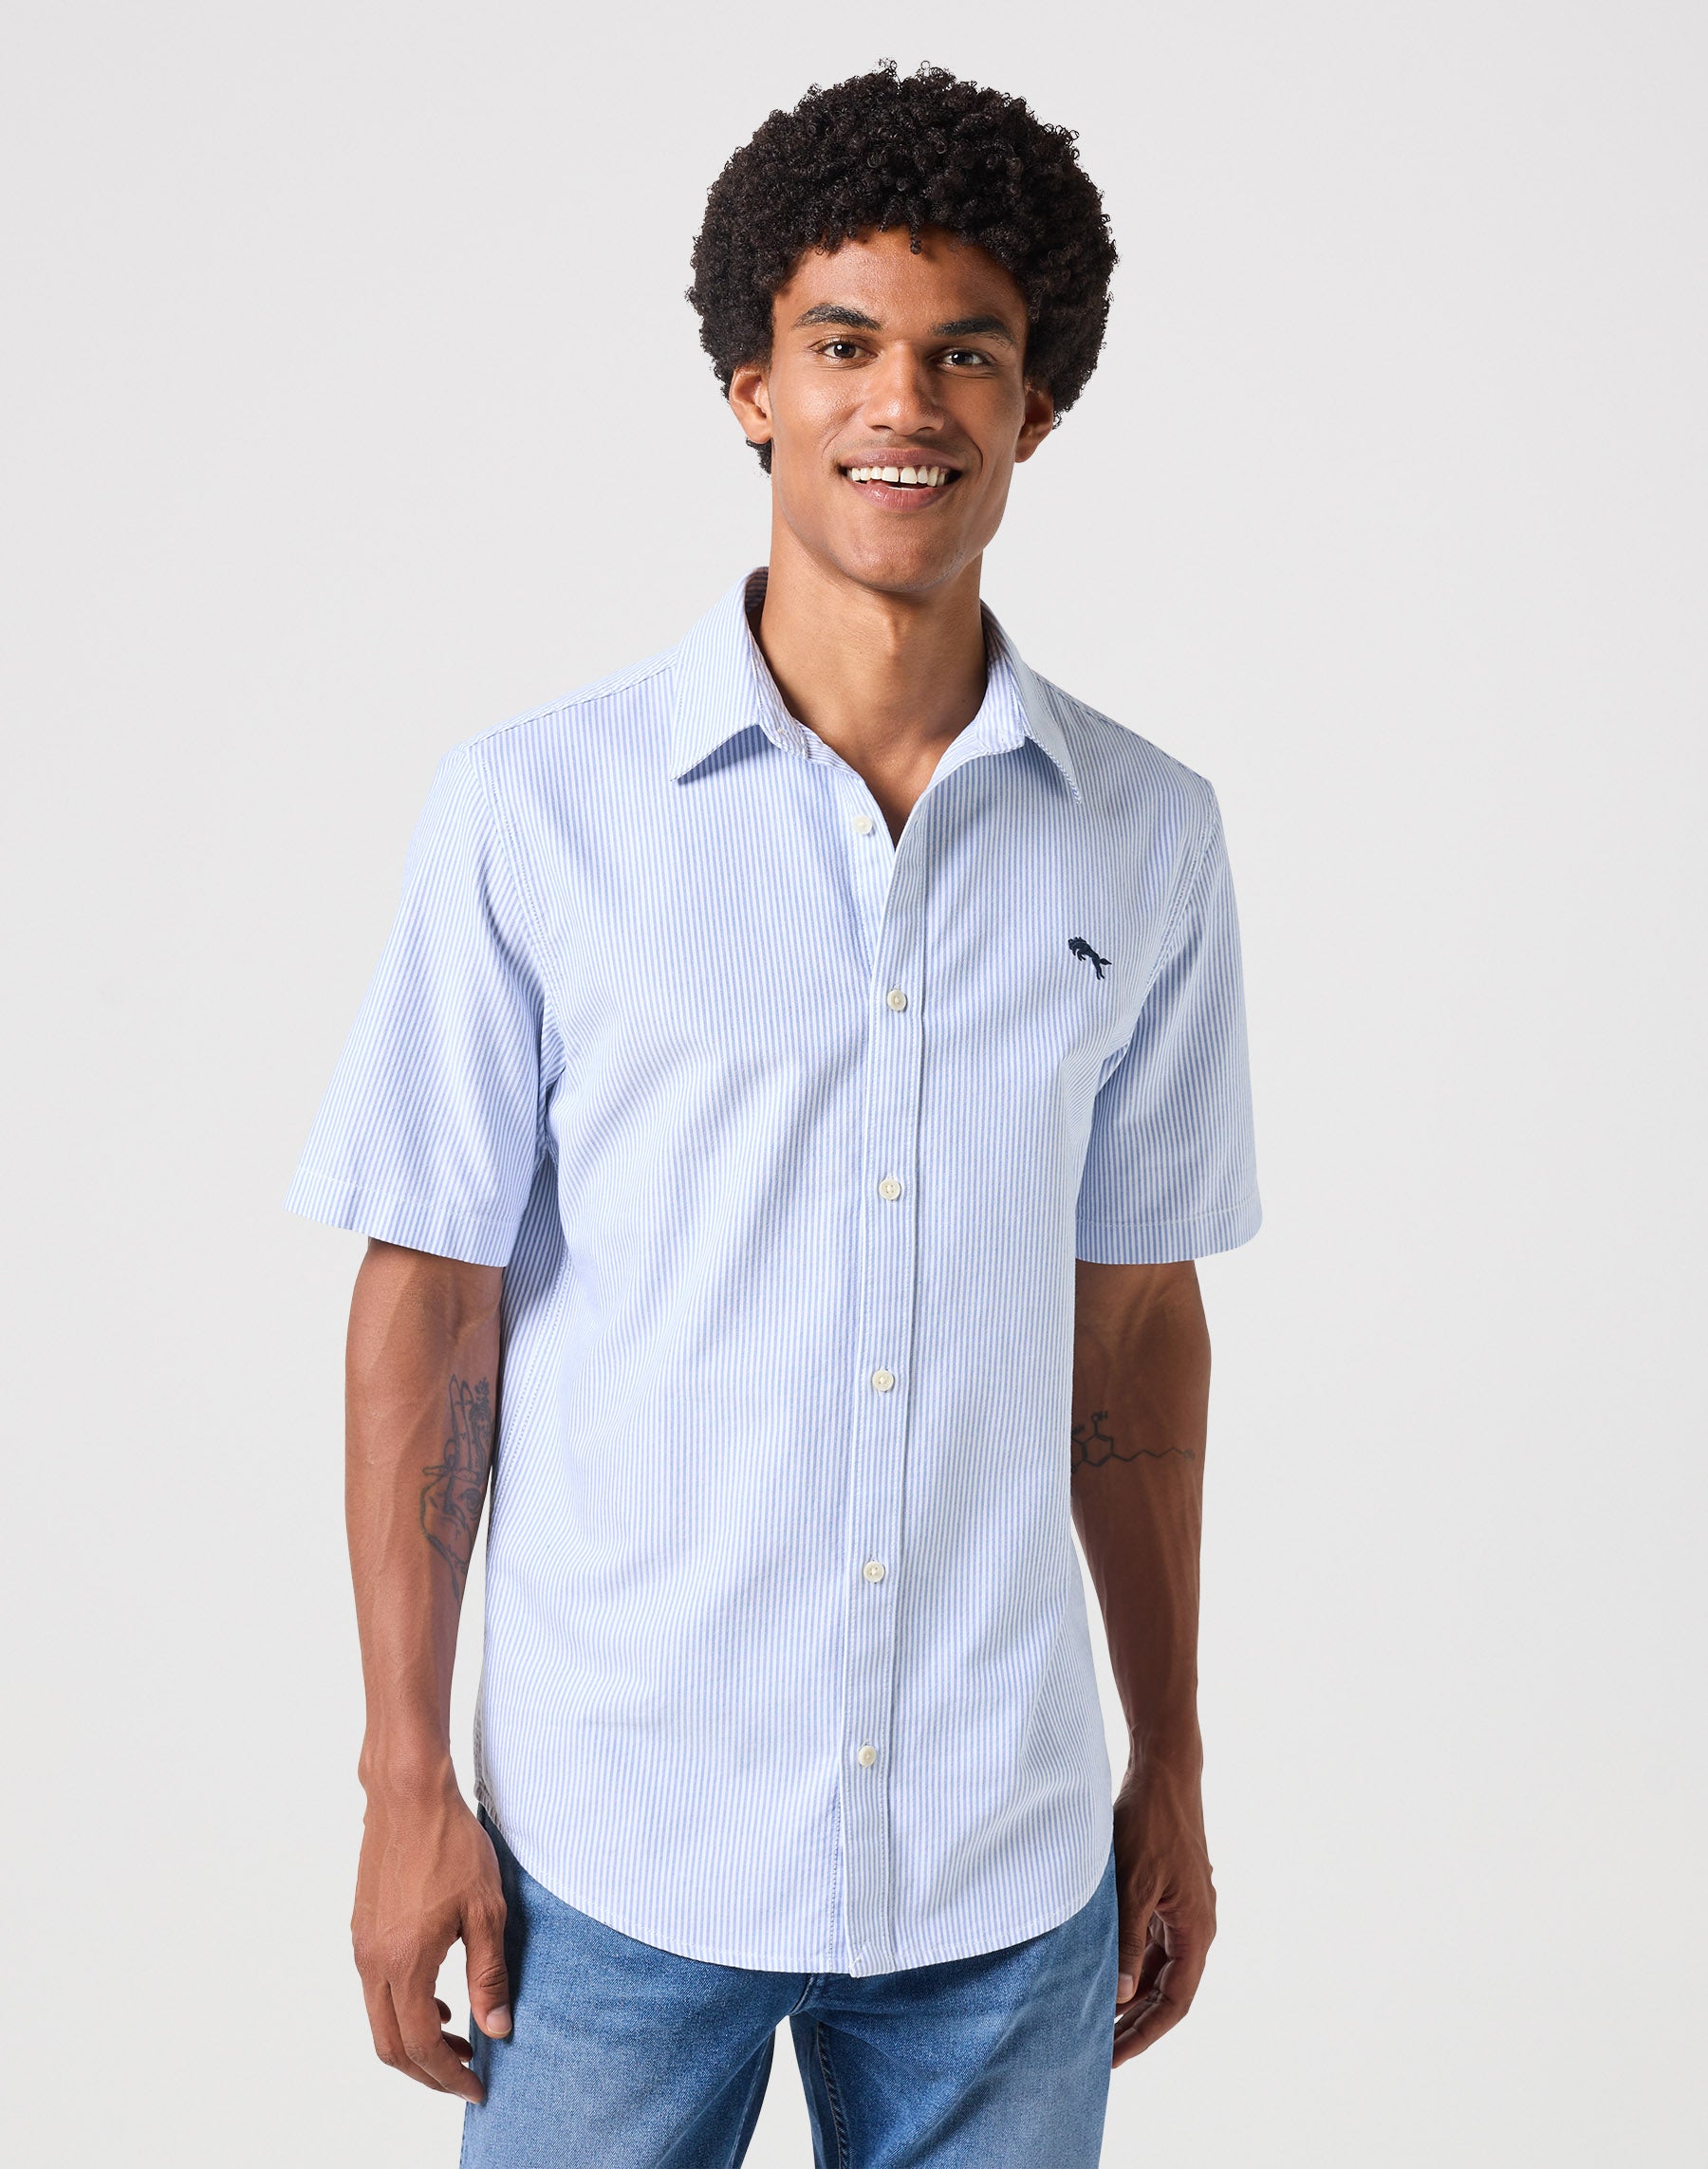 Short Sleeves Shirt in Blue Stripe Oxford Hemden Wrangler   